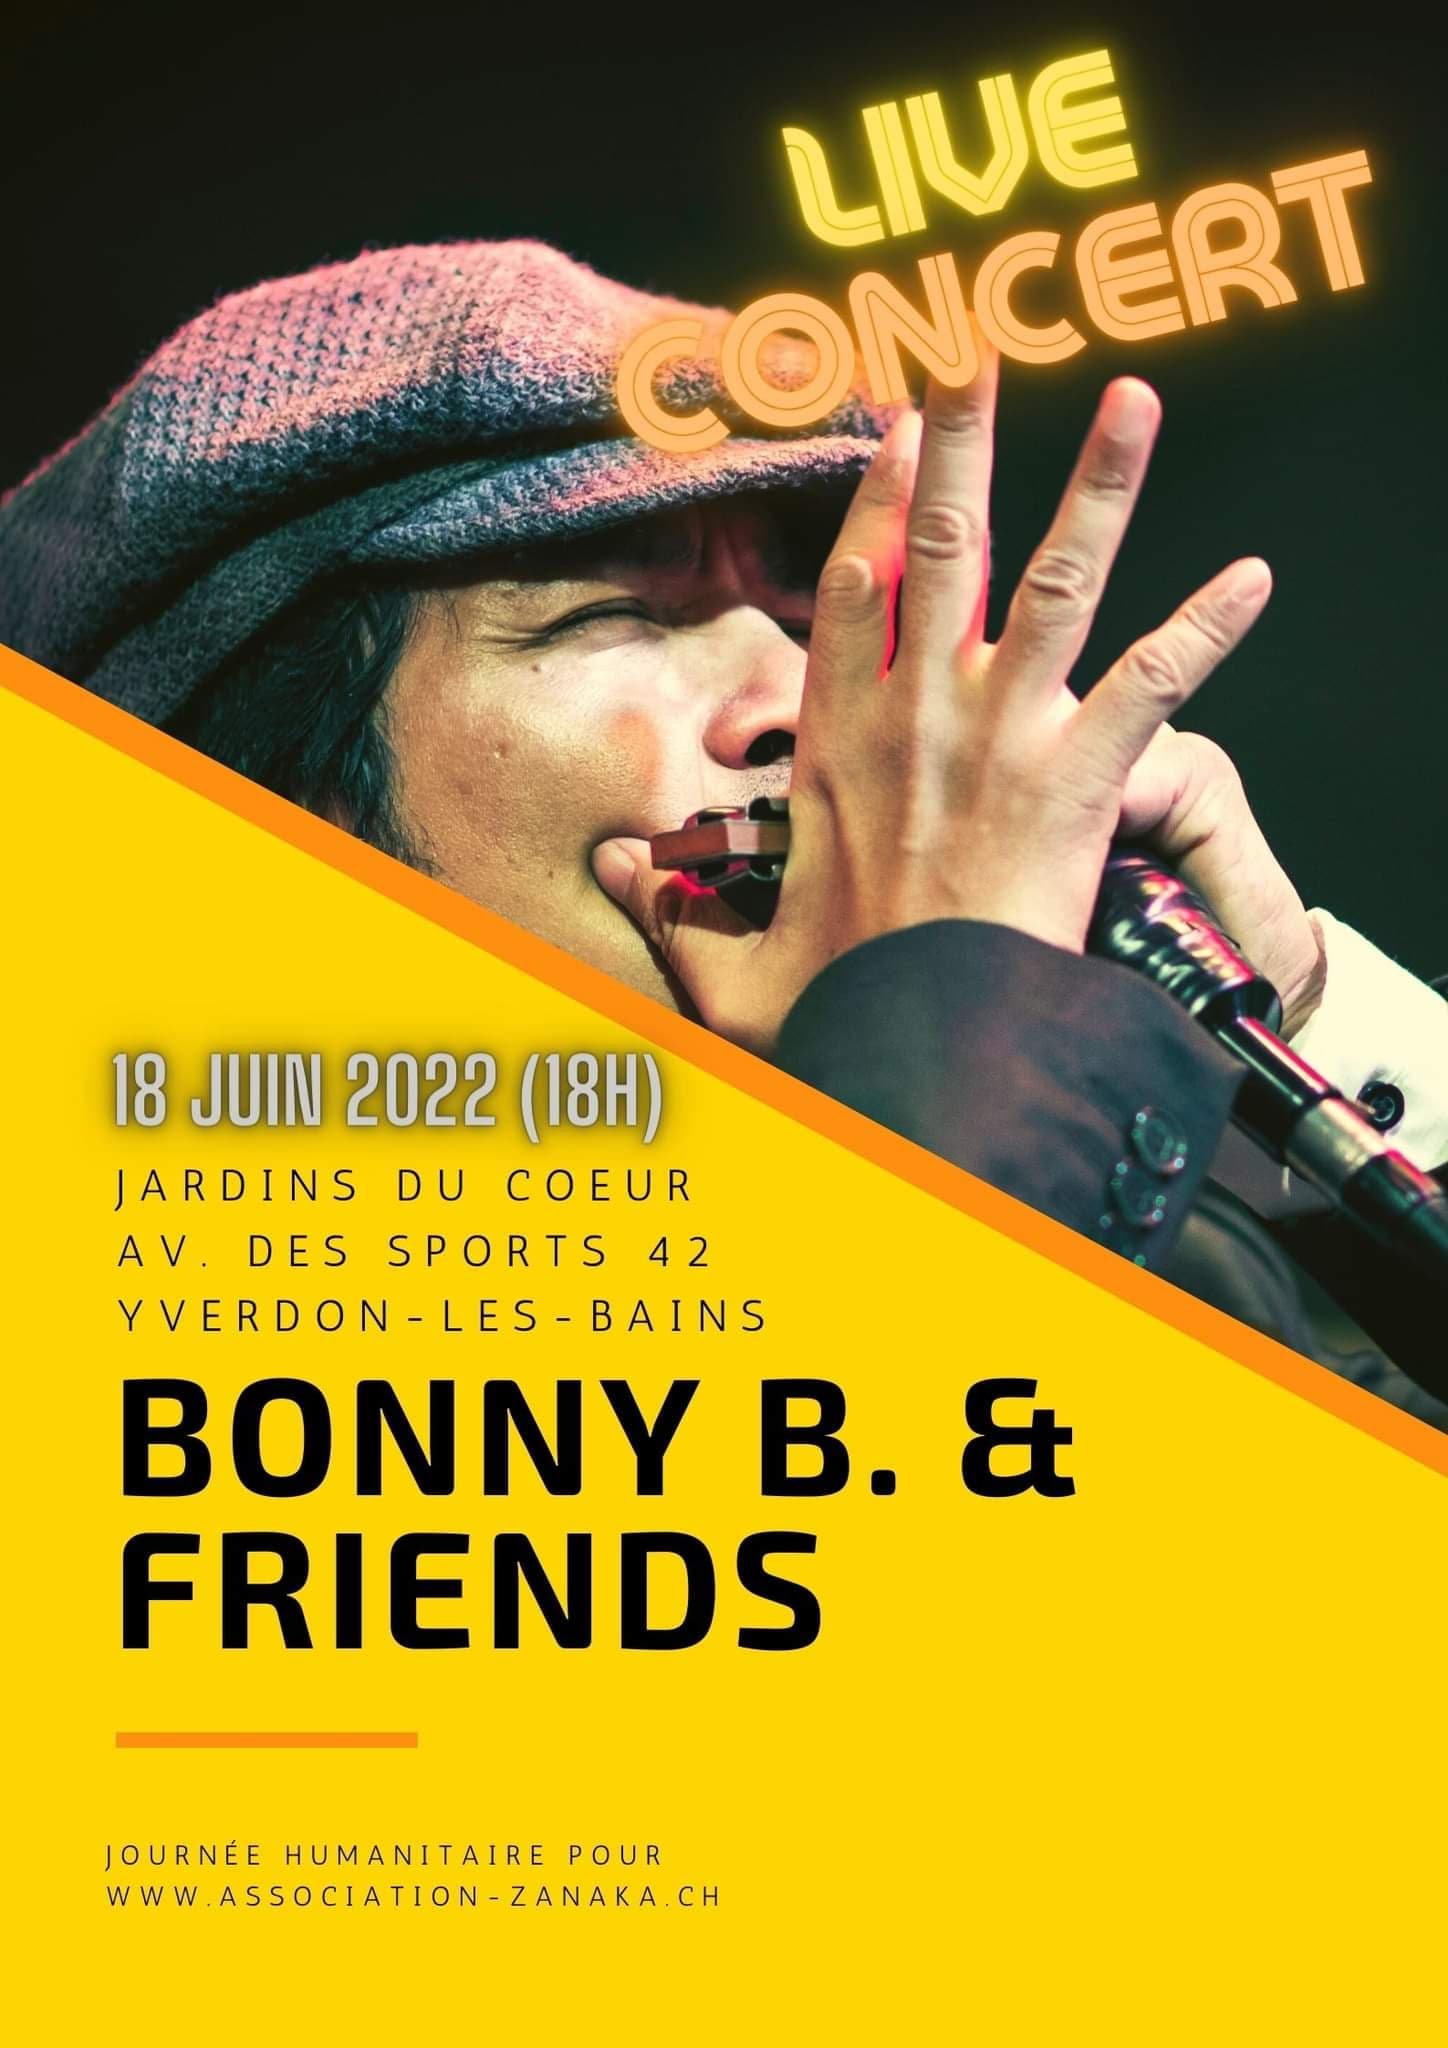 Bonny B. & Friends – 18 juin 2022